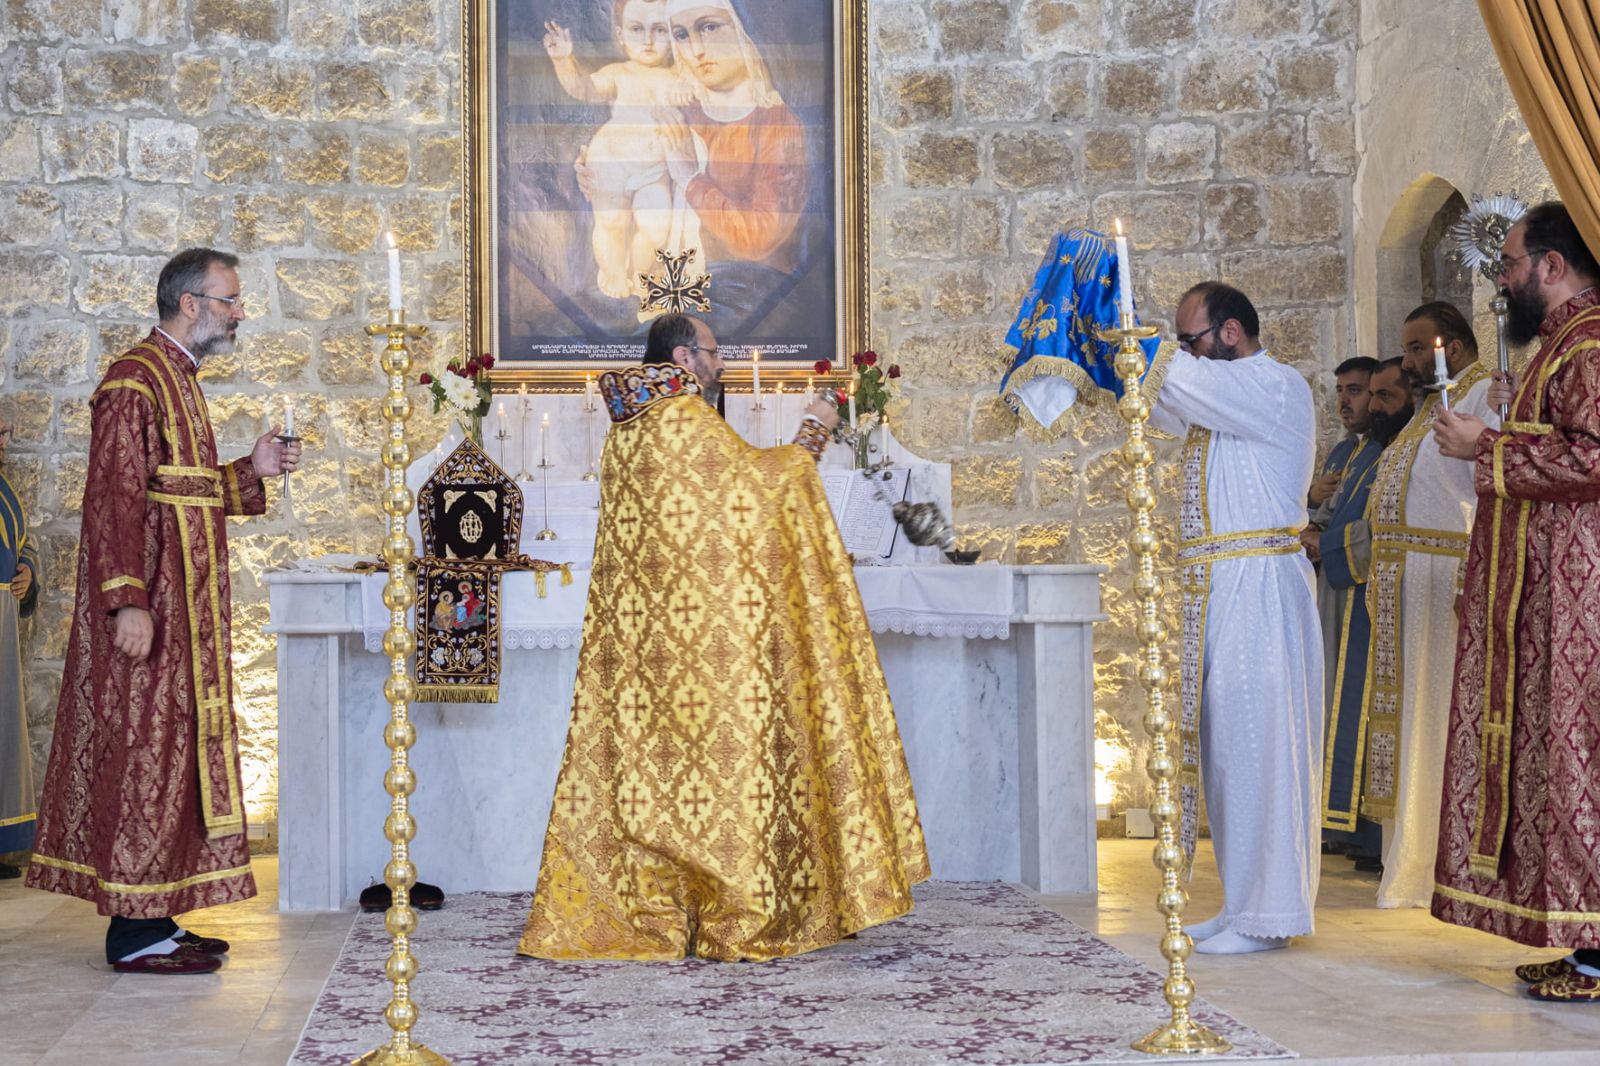 Մալաթիայի Սուրբ Երրորդություն եկեղեցում 106 տարվա դադարից հետո առաջին պատարագն է մատուցվել